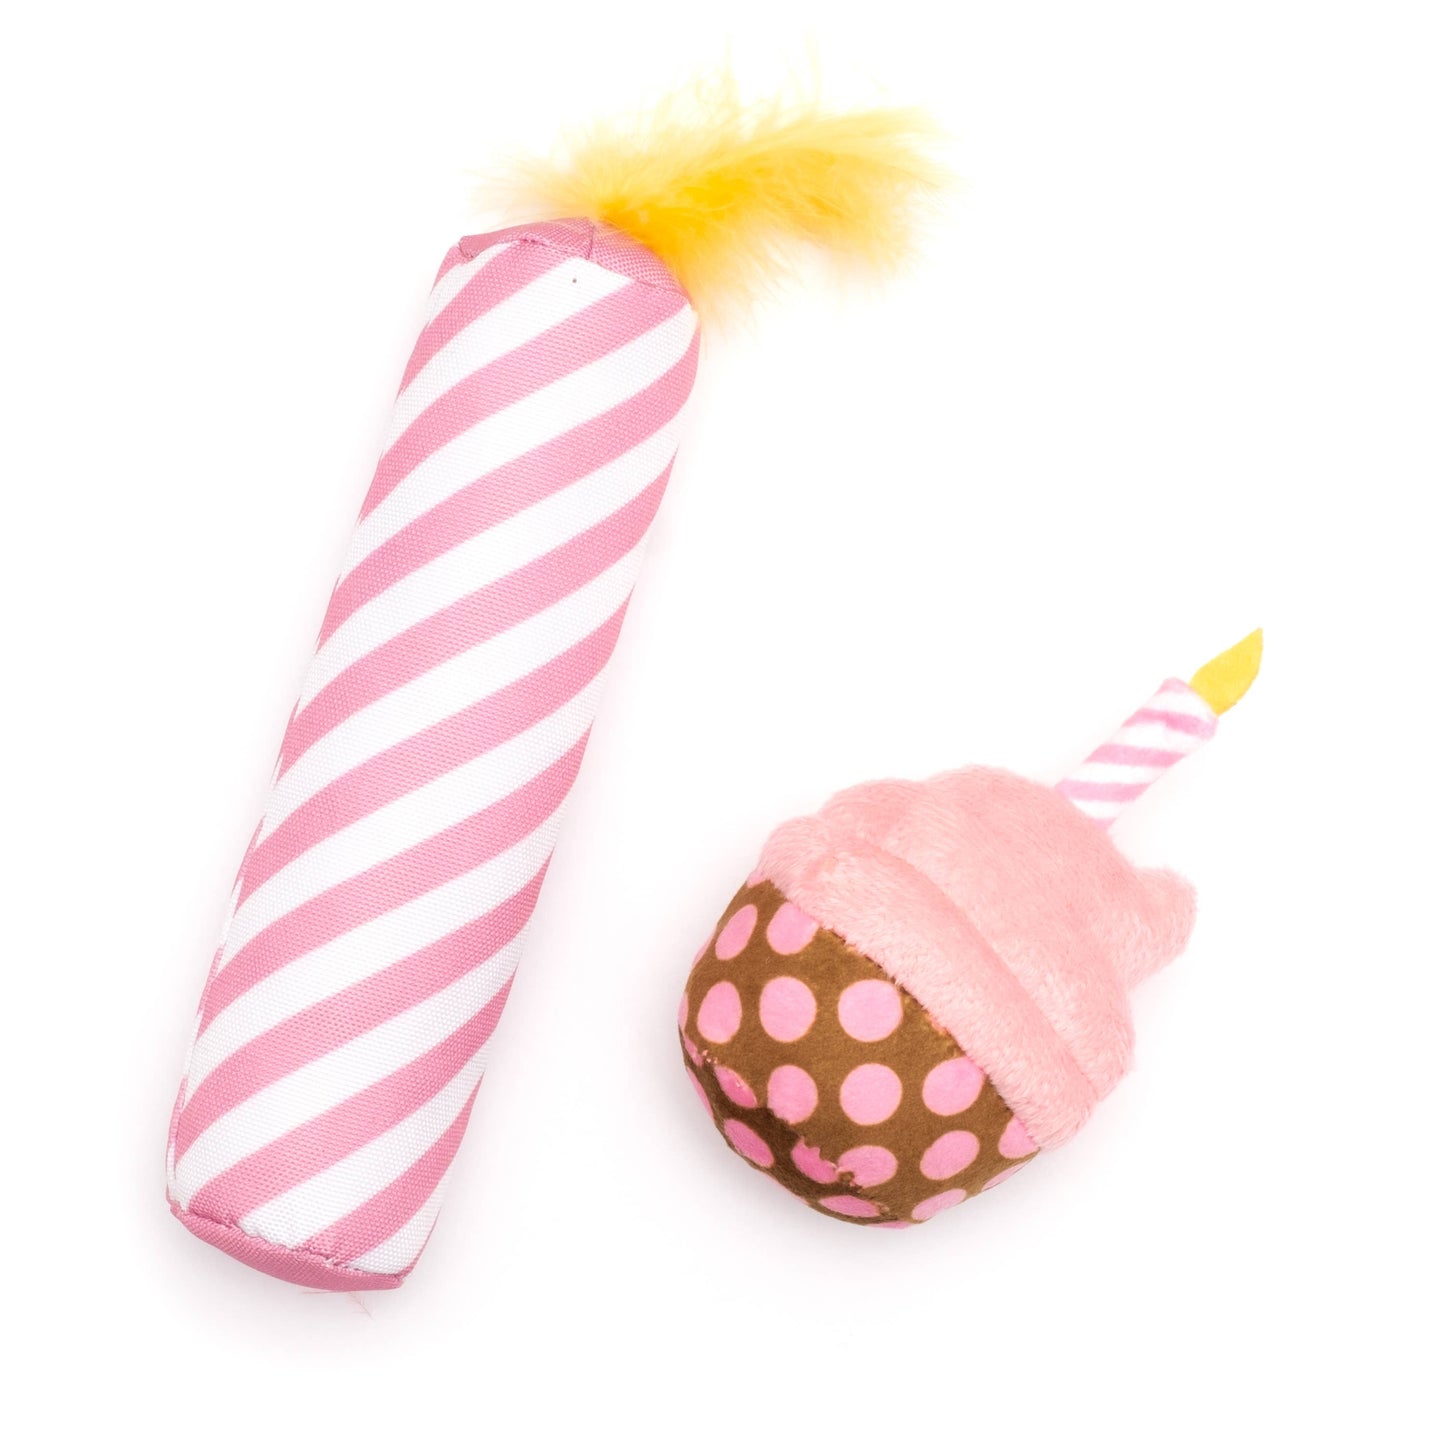 Birthday Cupcake & Candle Dog Toy Set - Pink